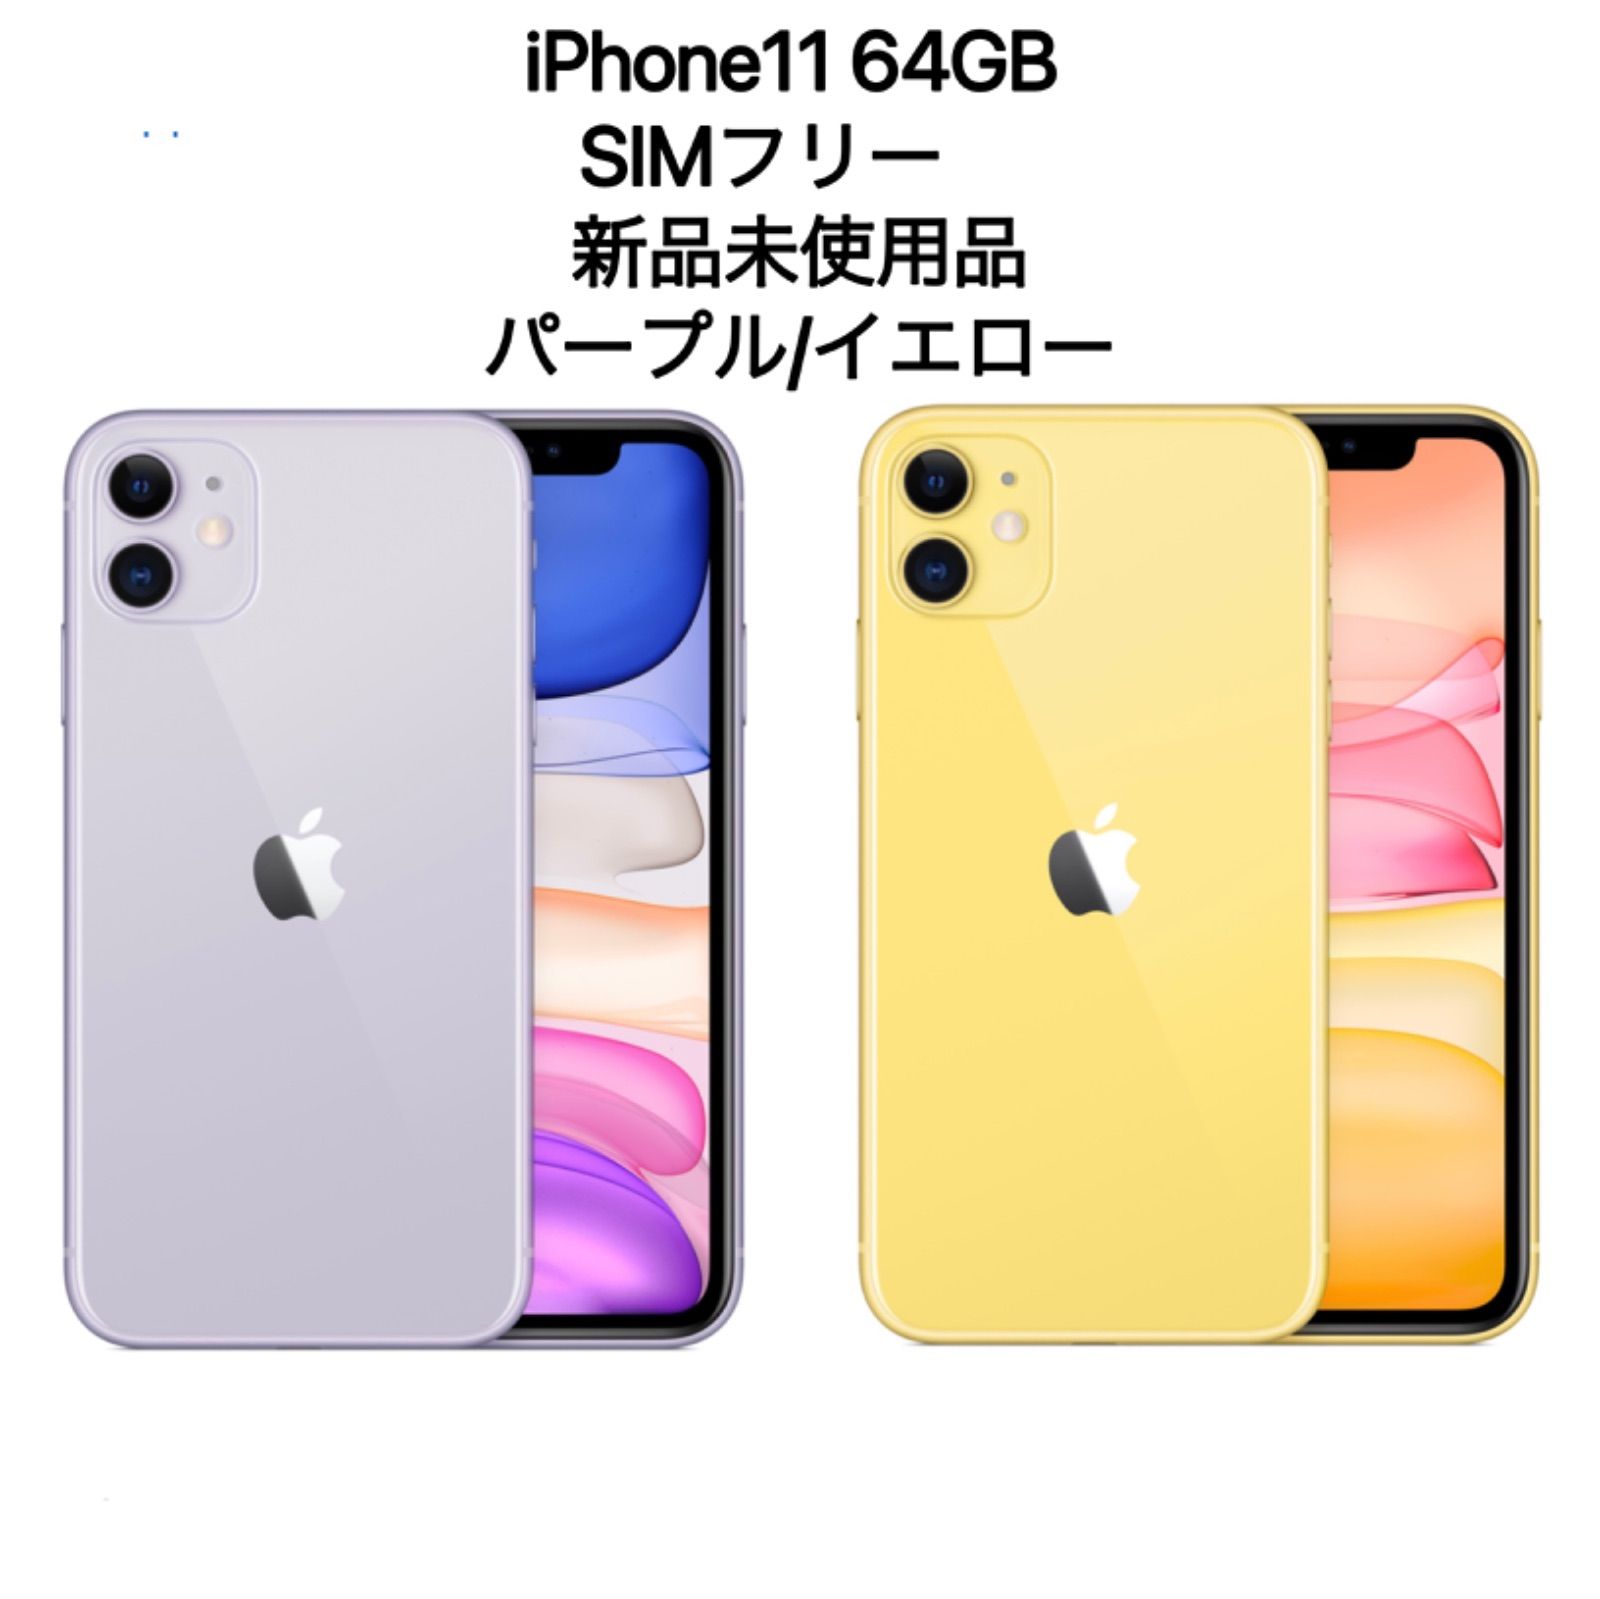 iPhone11 64GB SIMフリー 新品未使用品 イエロー、パープル - メルカリ